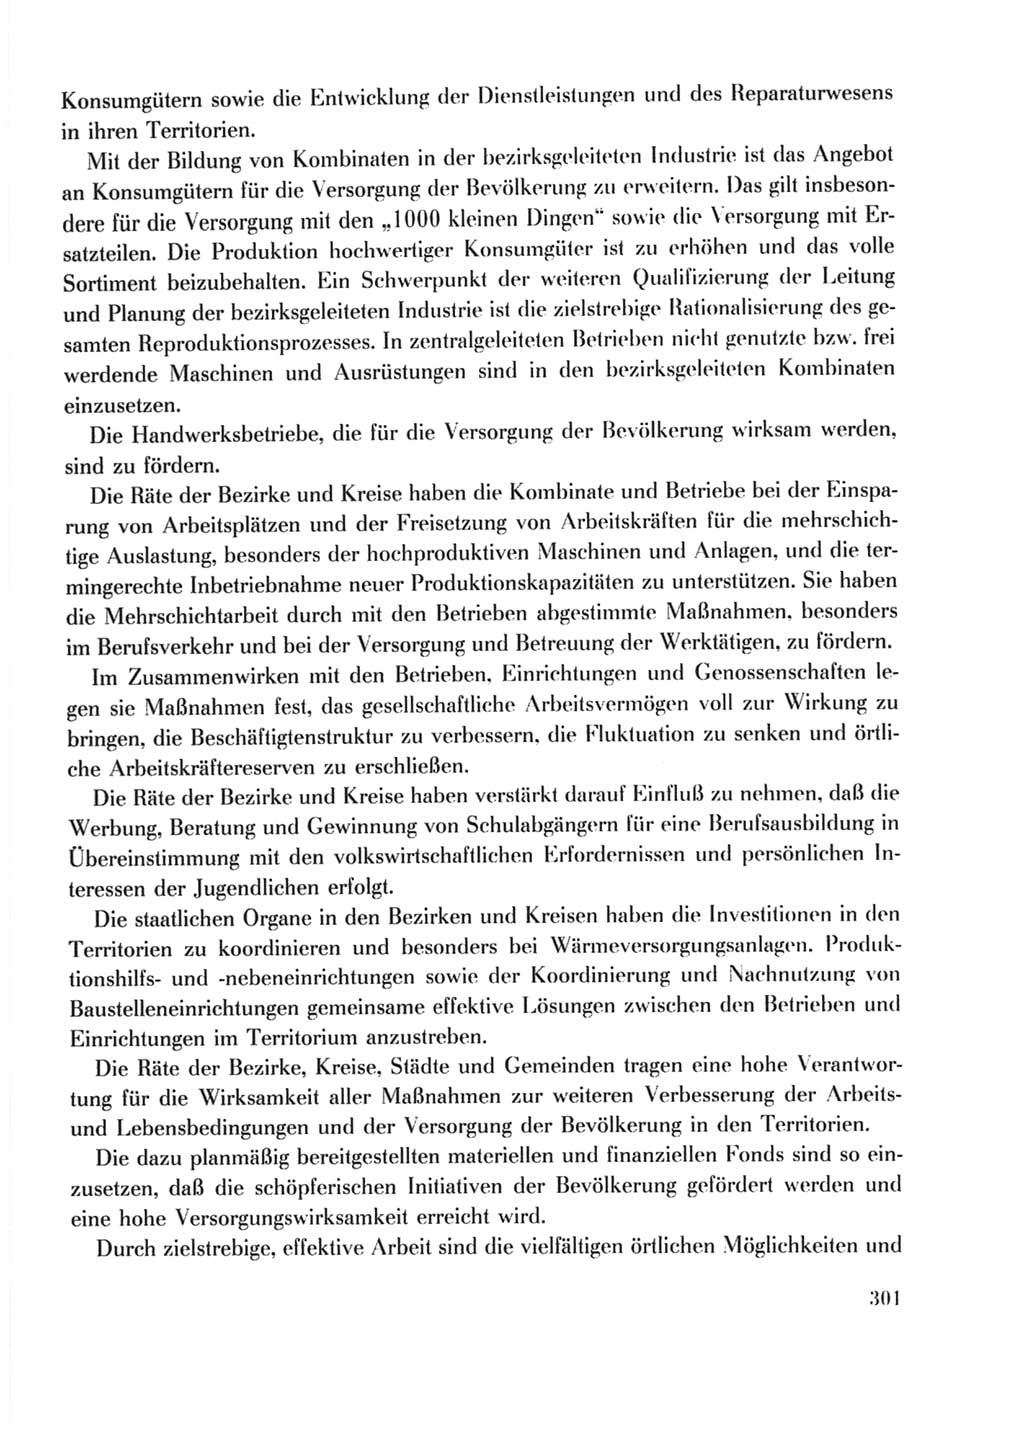 Protokoll der Verhandlungen des Ⅹ. Parteitages der Sozialistischen Einheitspartei Deutschlands (SED) [Deutsche Demokratische Republik (DDR)] 1981, Band 2, Seite 301 (Prot. Verh. Ⅹ. PT SED DDR 1981, Bd. 2, S. 301)